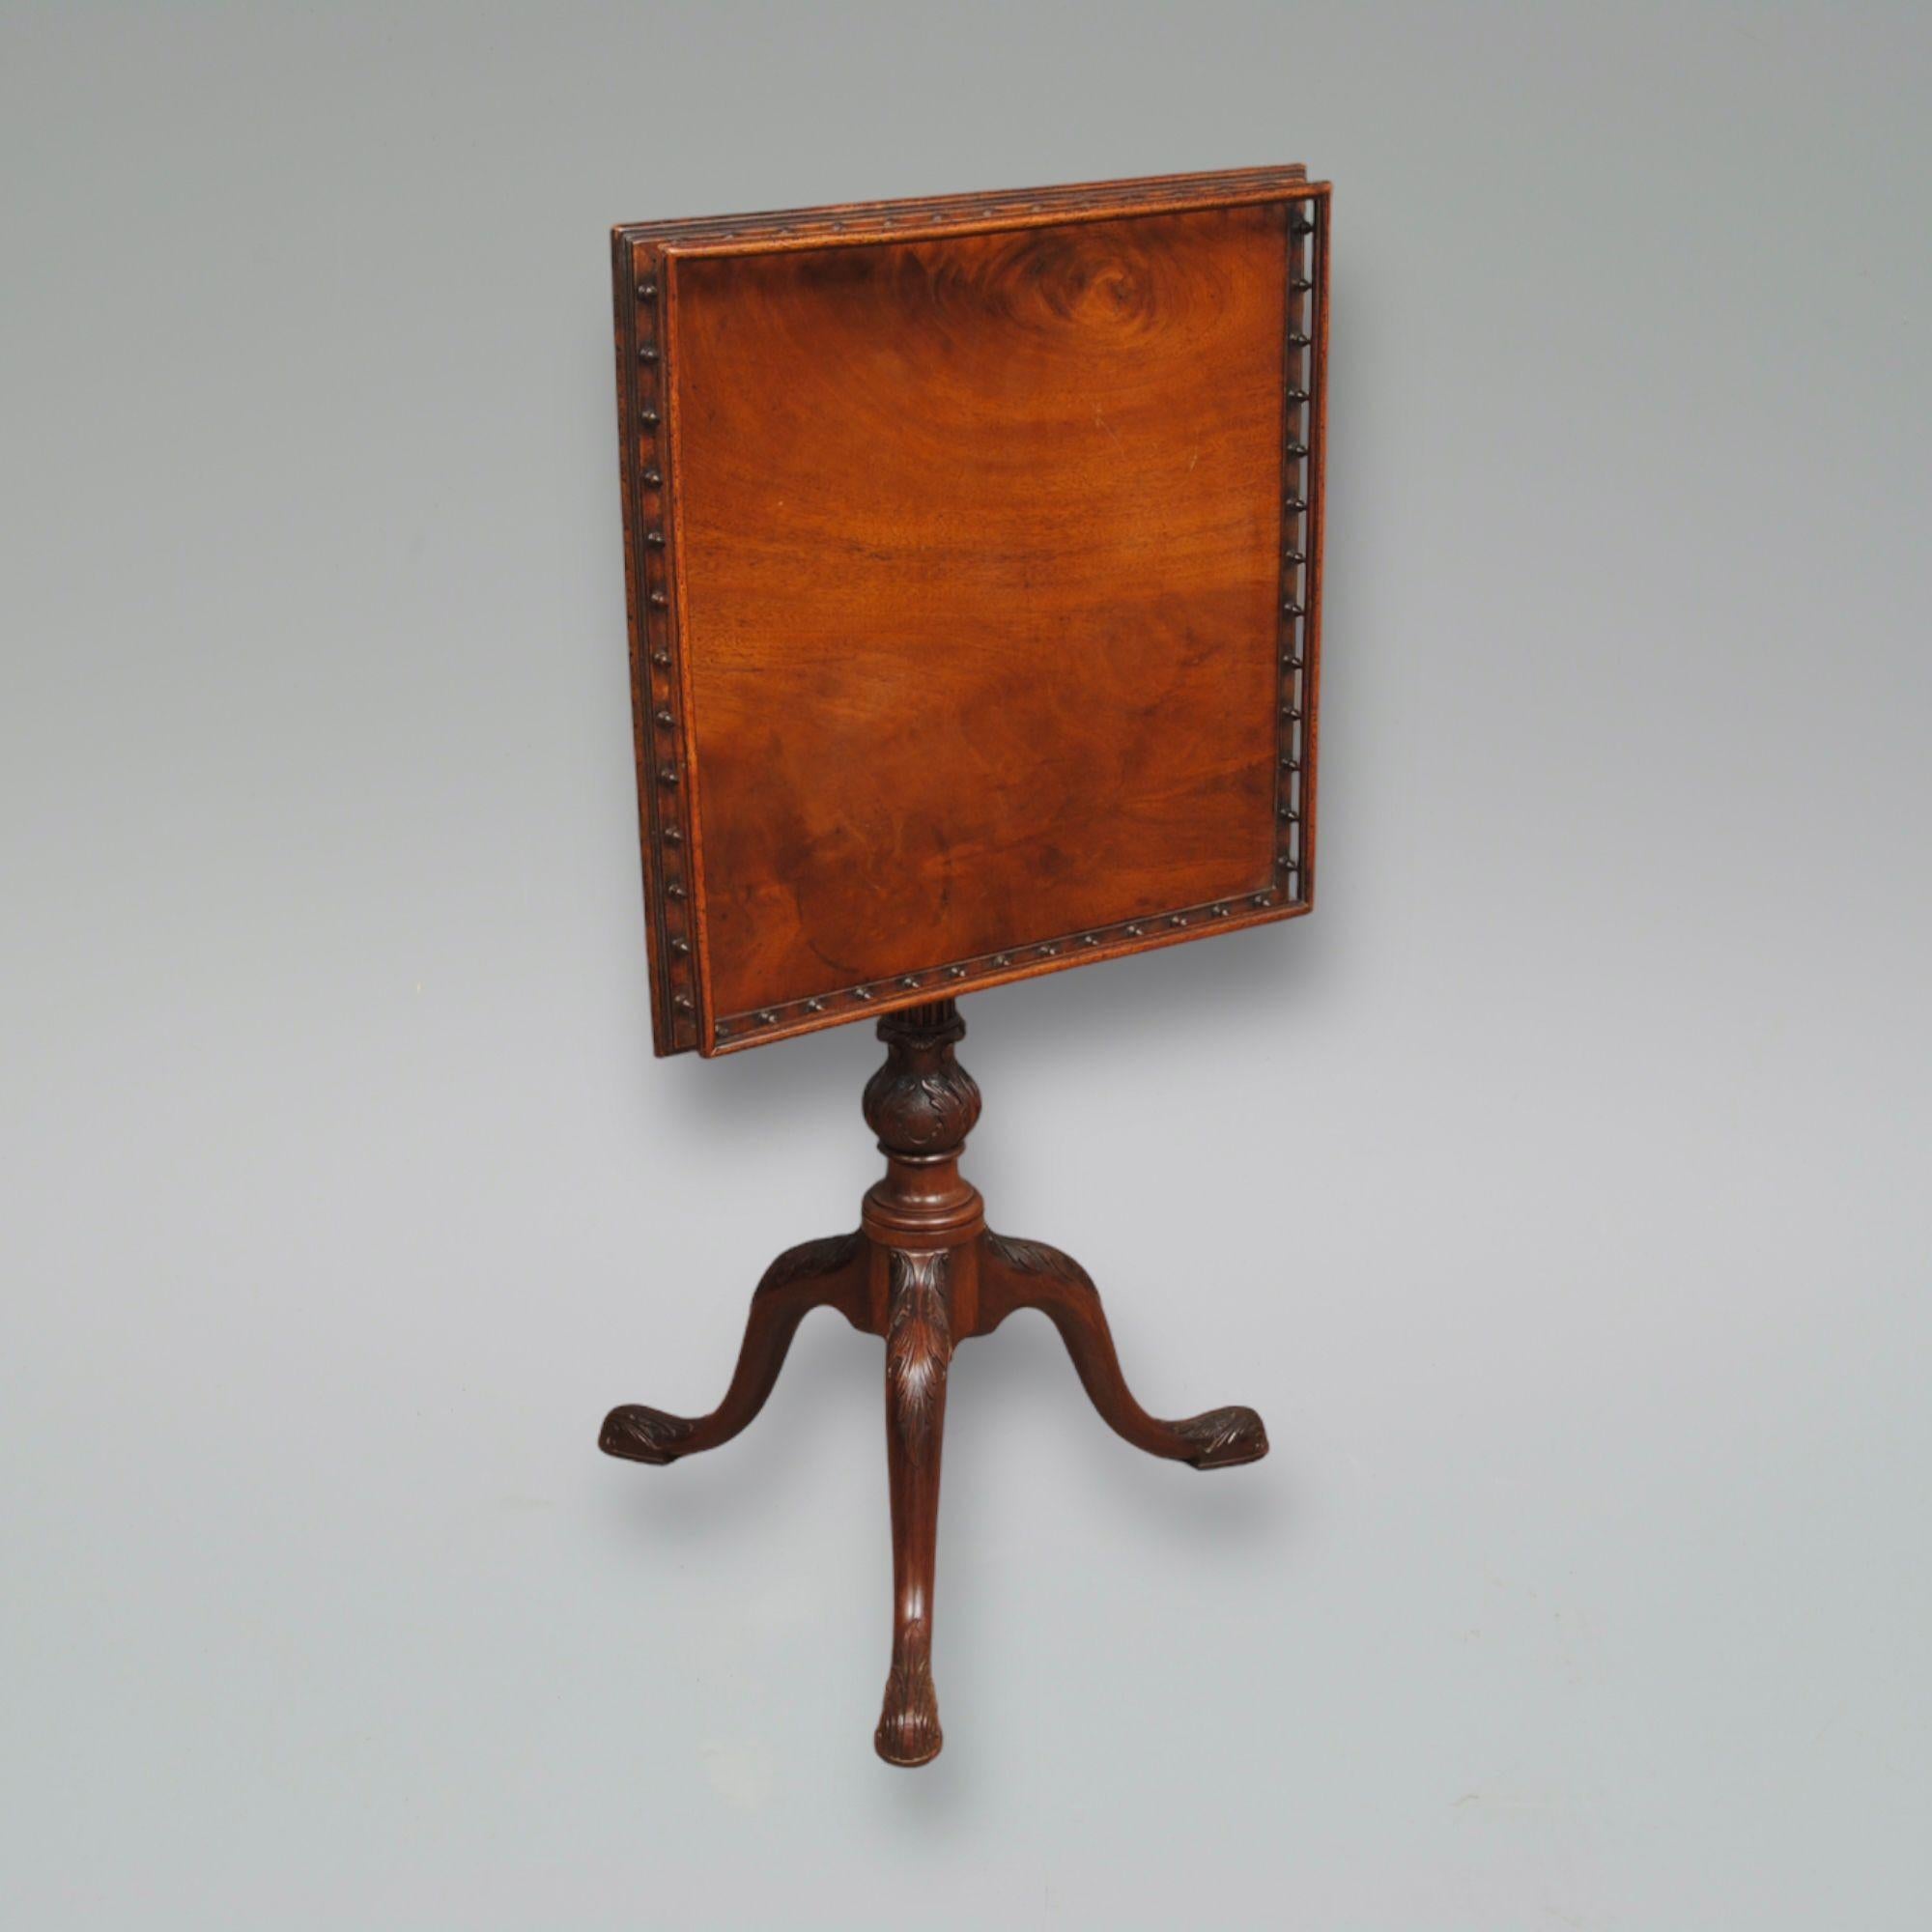 Ein feiner Mahagoni-Dreibein-Tisch aus dem 18. Jahrhundert mit geschnitztem Akanthus-Stamm und Cabriole-Beinen. Das Oberteil mit einer eleganten Galerie mit gedrechselten Spindeln.
CIRCA 1770